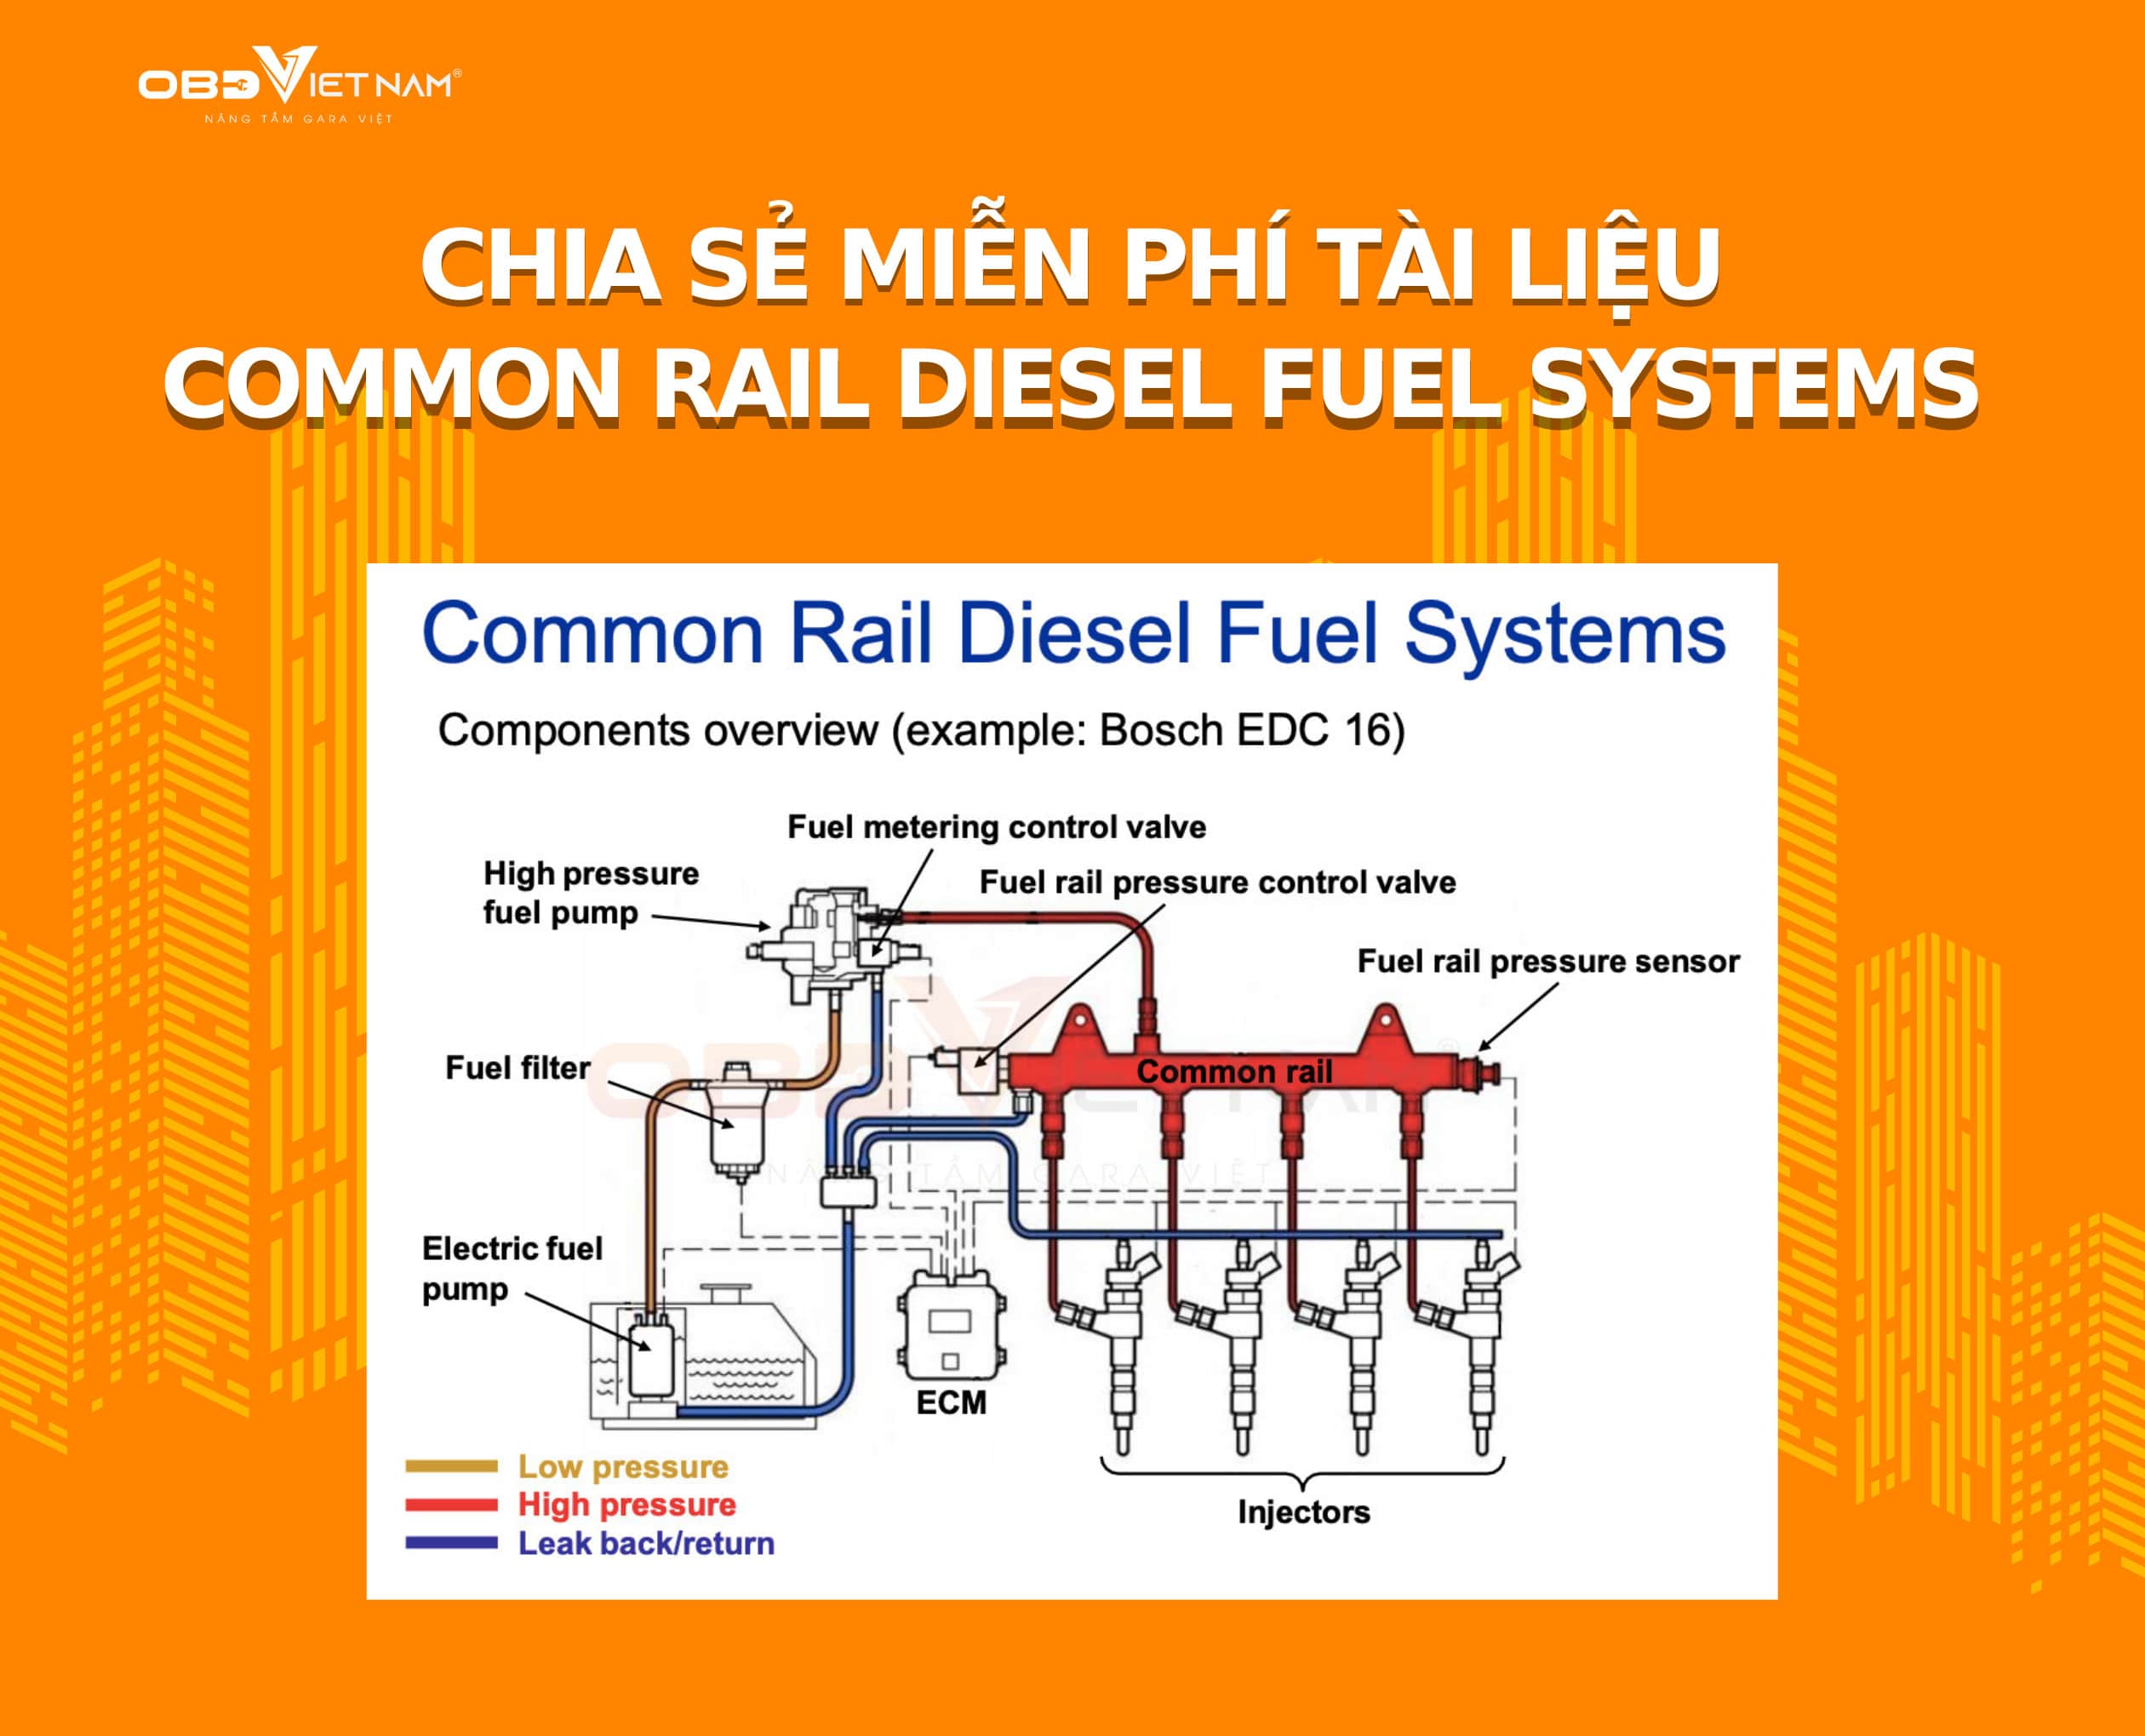 Chia Sẻ Miễn Phí Tài Liệu Về Hệ Thống Common Rail Fuel Diesel